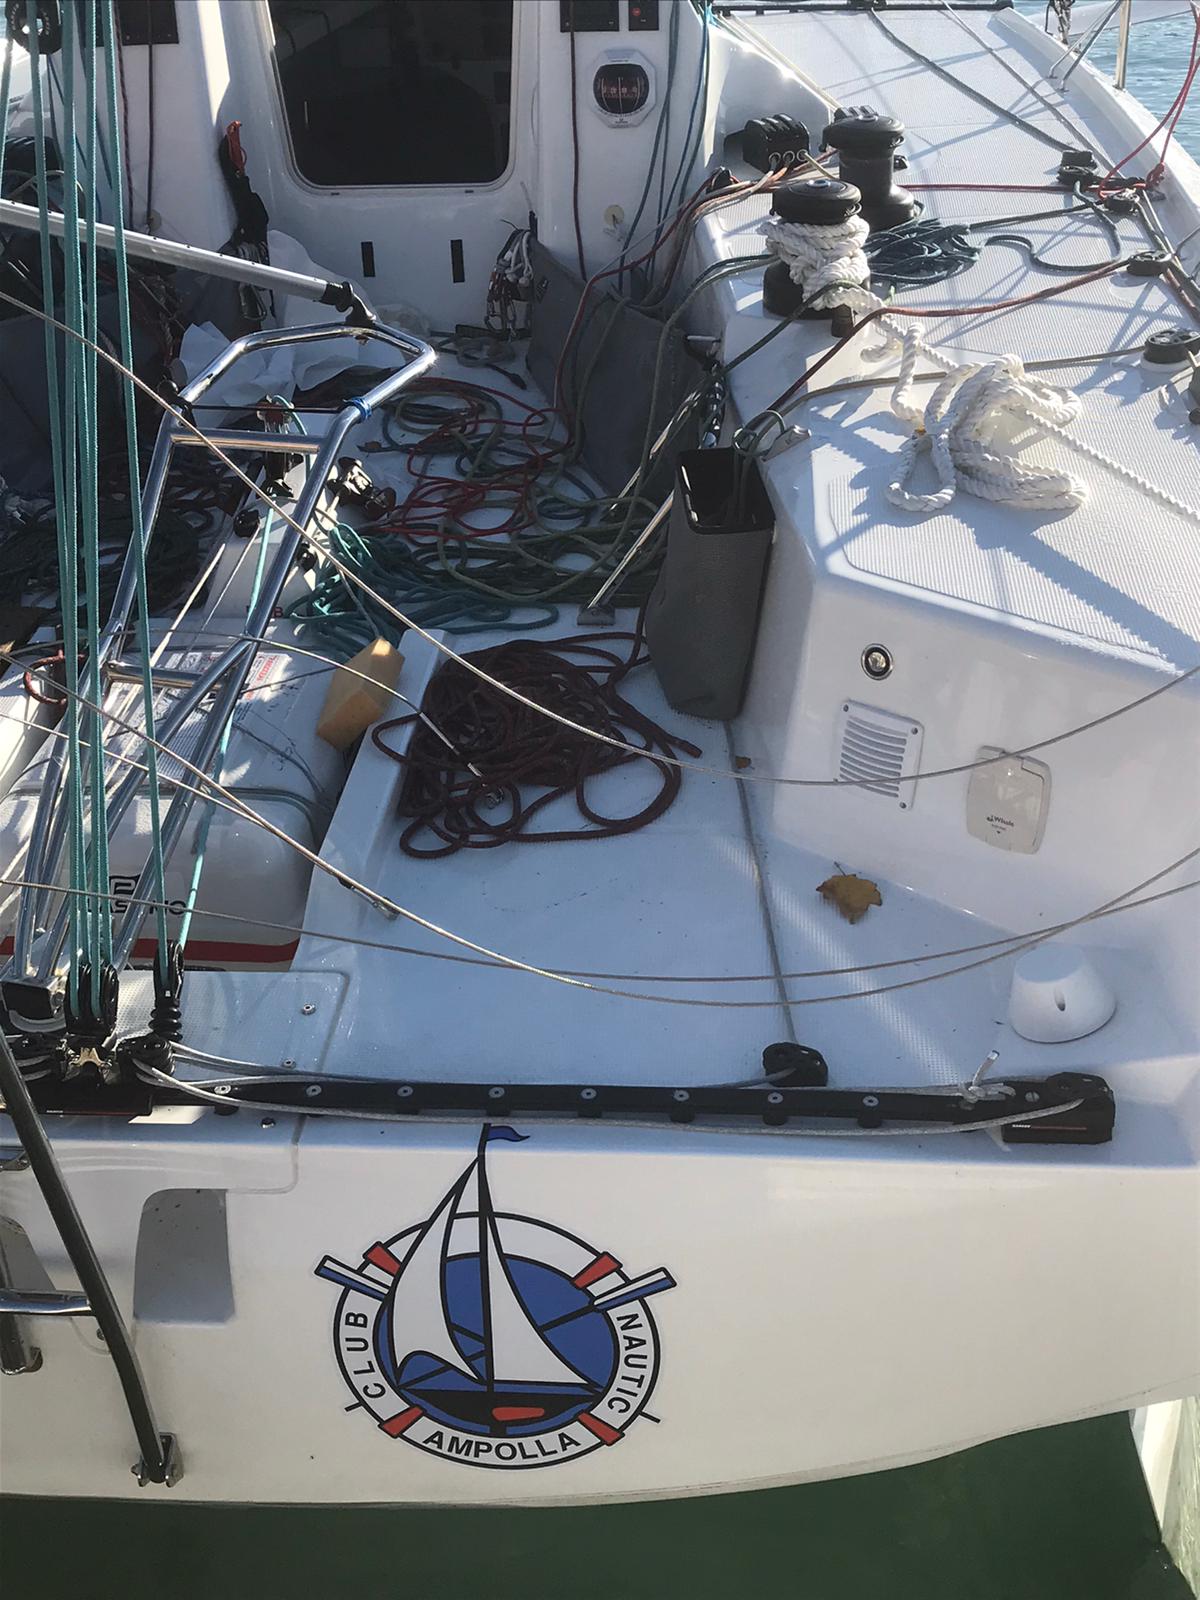 Club Nautic Ampolla, patrocinador del equipo español en la prestigiosa regata Nastro Rossa Marina Militare